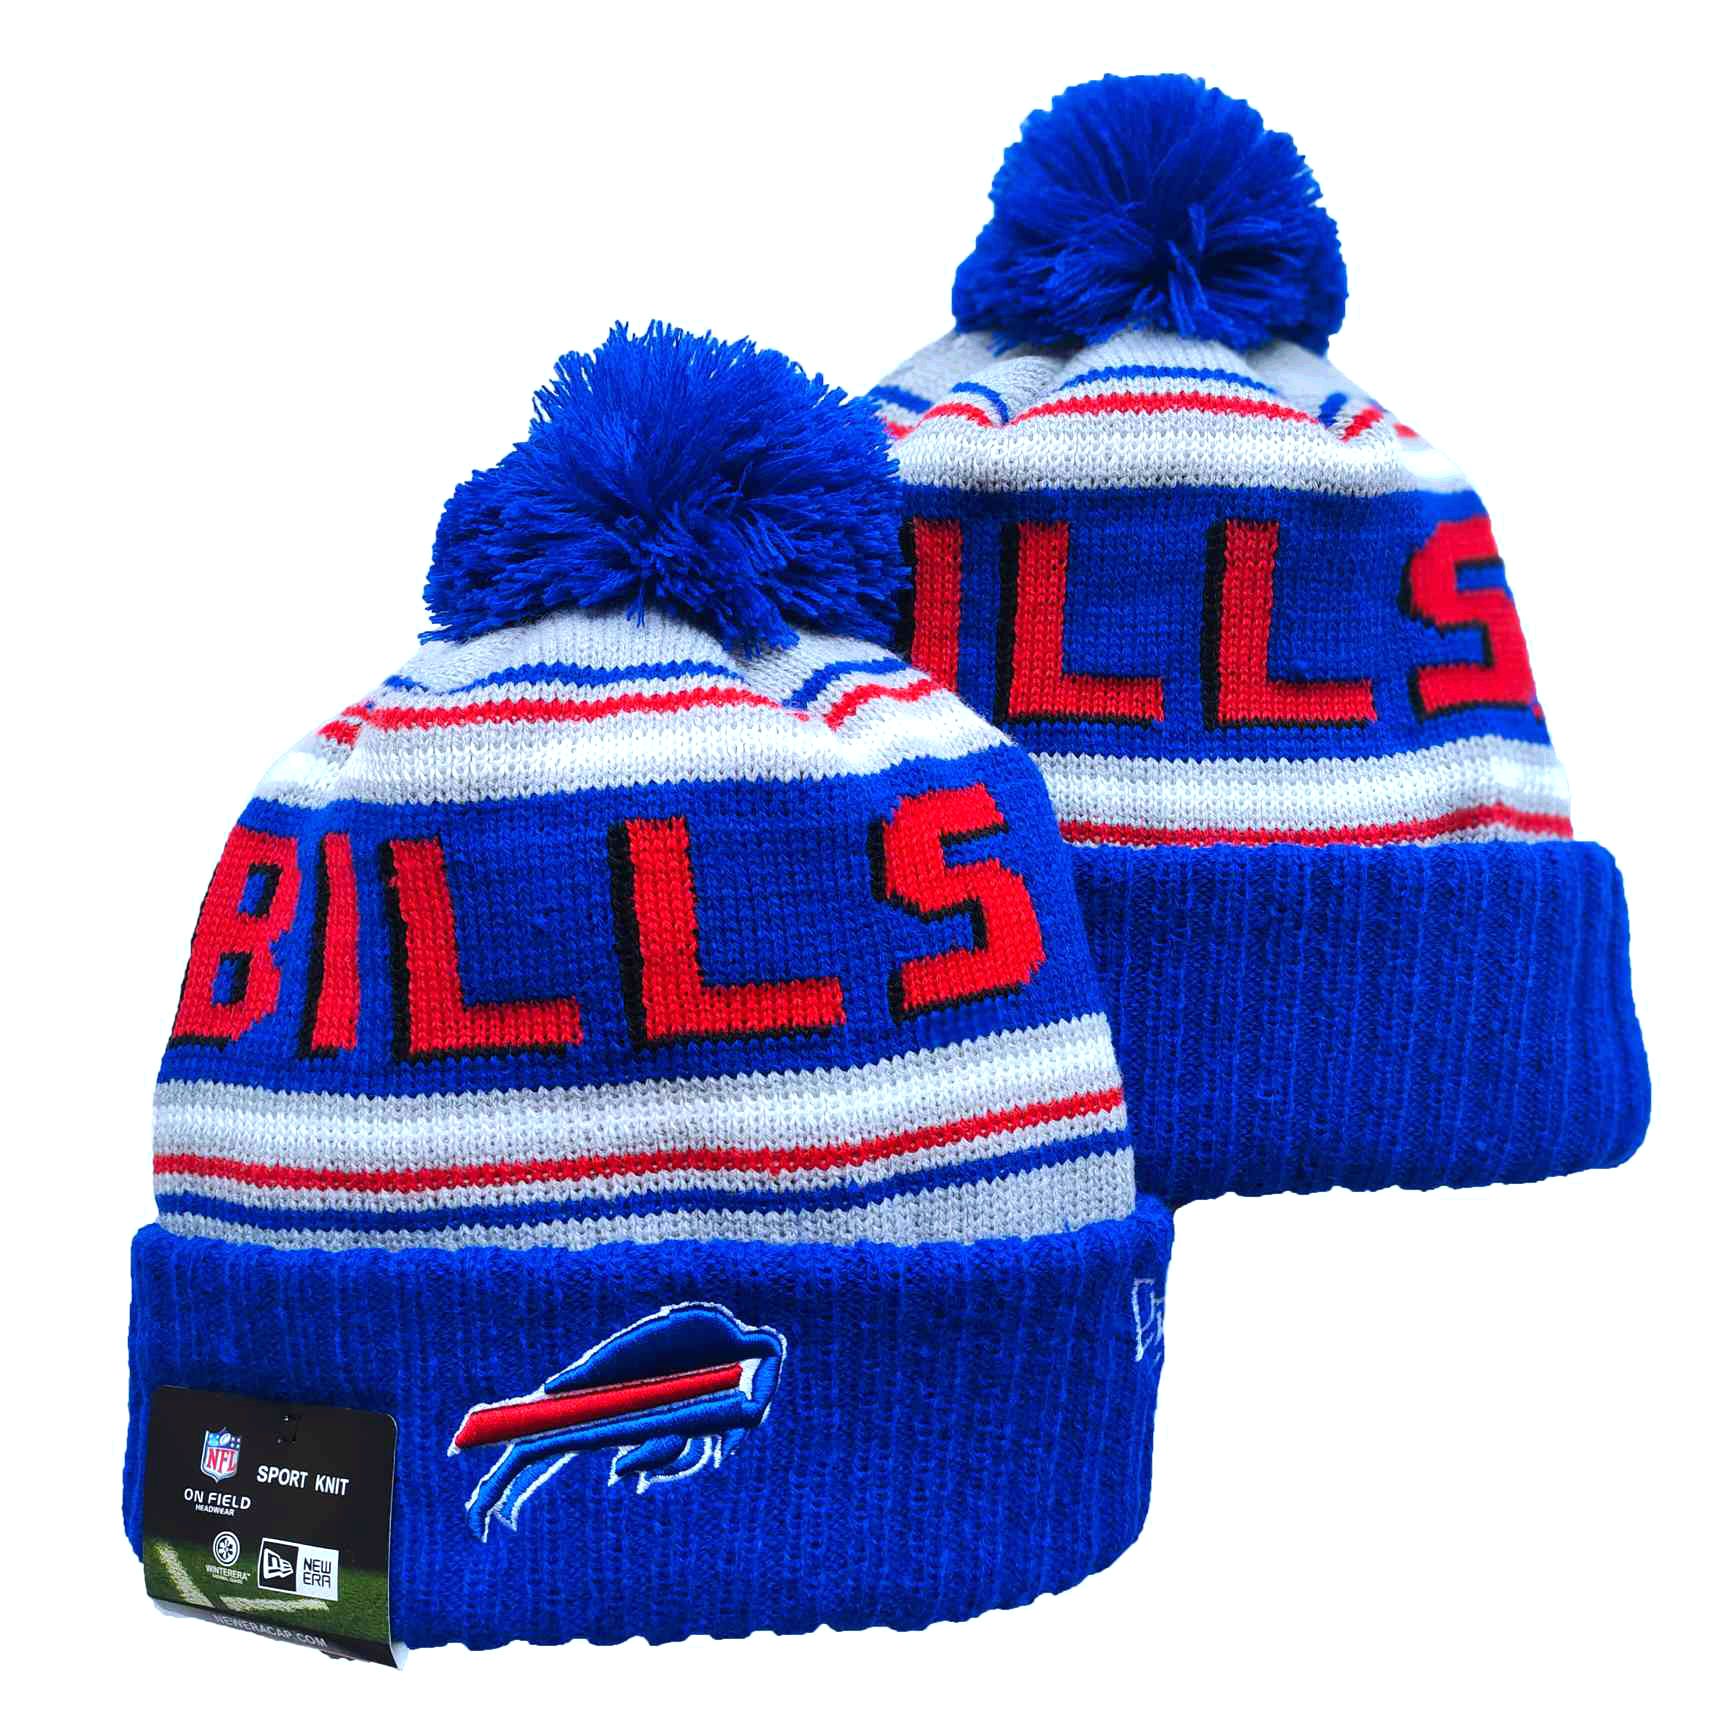 Bills Team Logo Royal Red Pom Cuffed Knit Hat YD